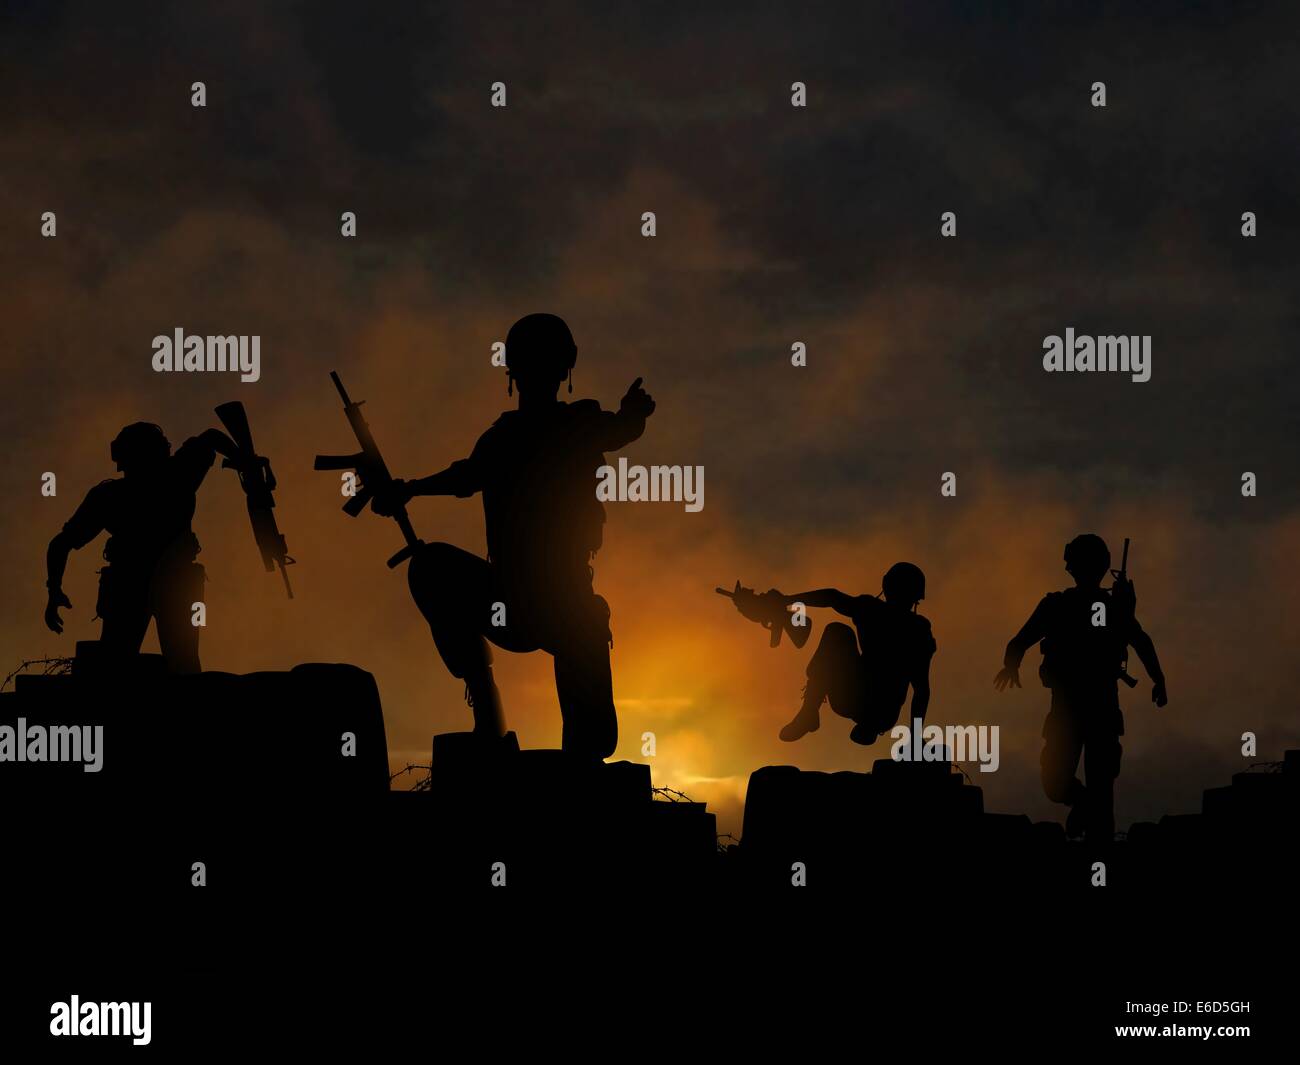 Drammatica illustrazione vettoriale di soldati avanzando all'alba o al tramonto, realizzata con un gradiente mesh Illustrazione Vettoriale